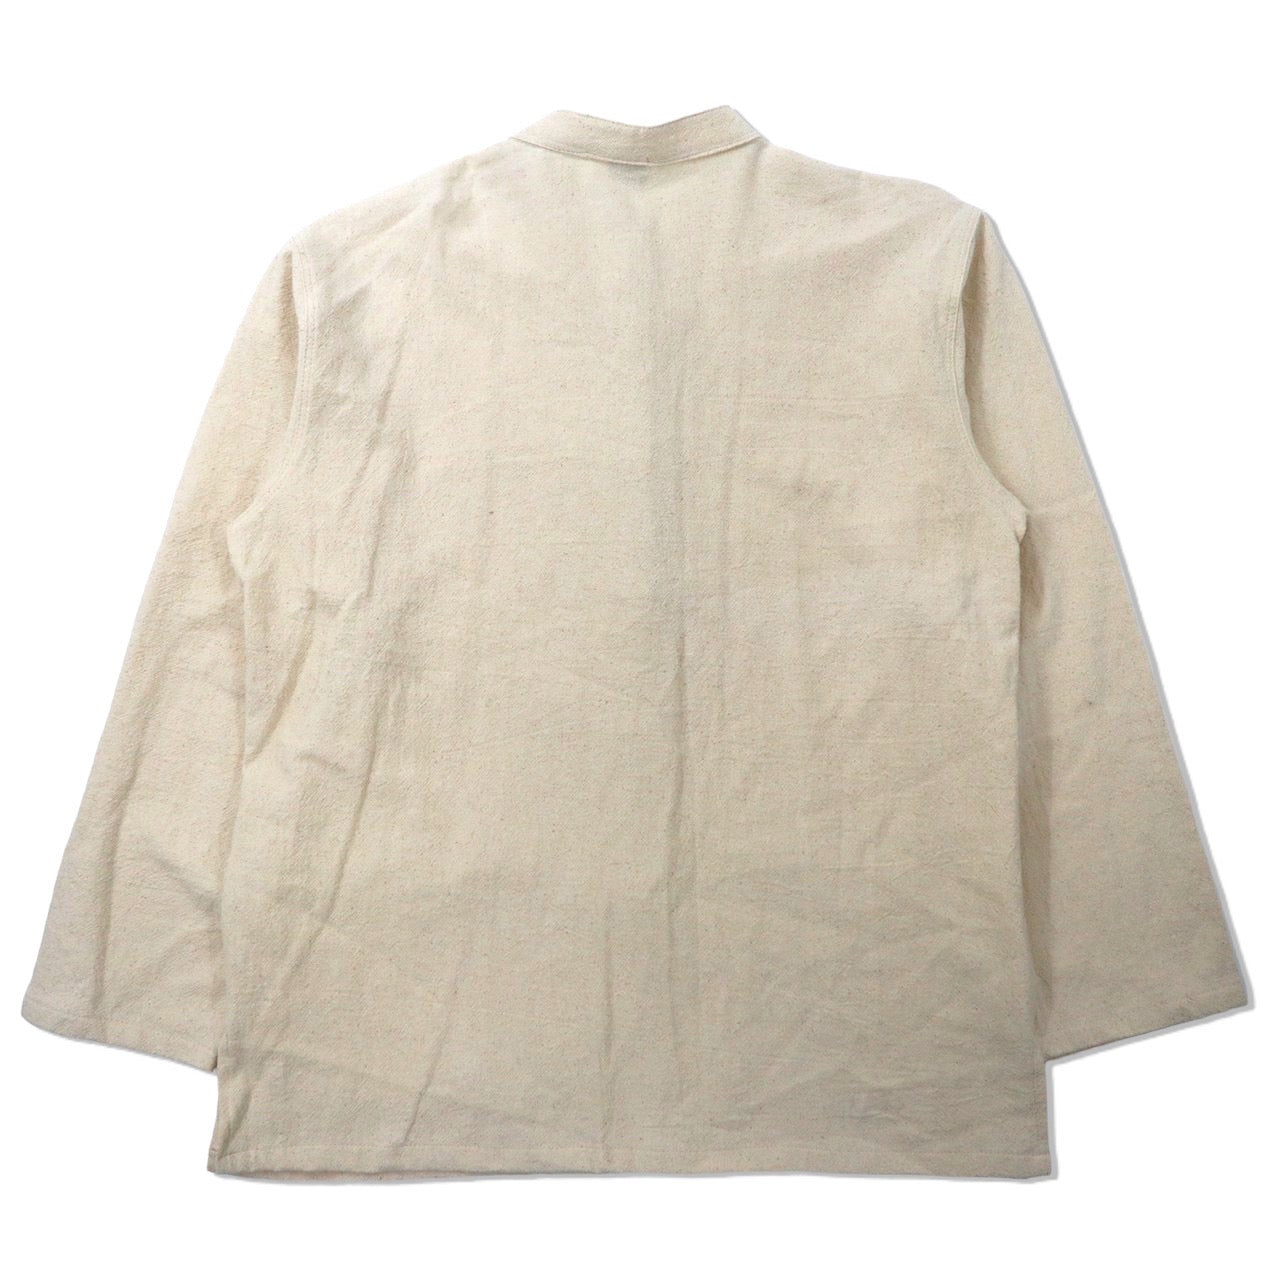 KURISP チャイナシャツジャケット XL ホワイト 生成り コットン ビッグサイズ